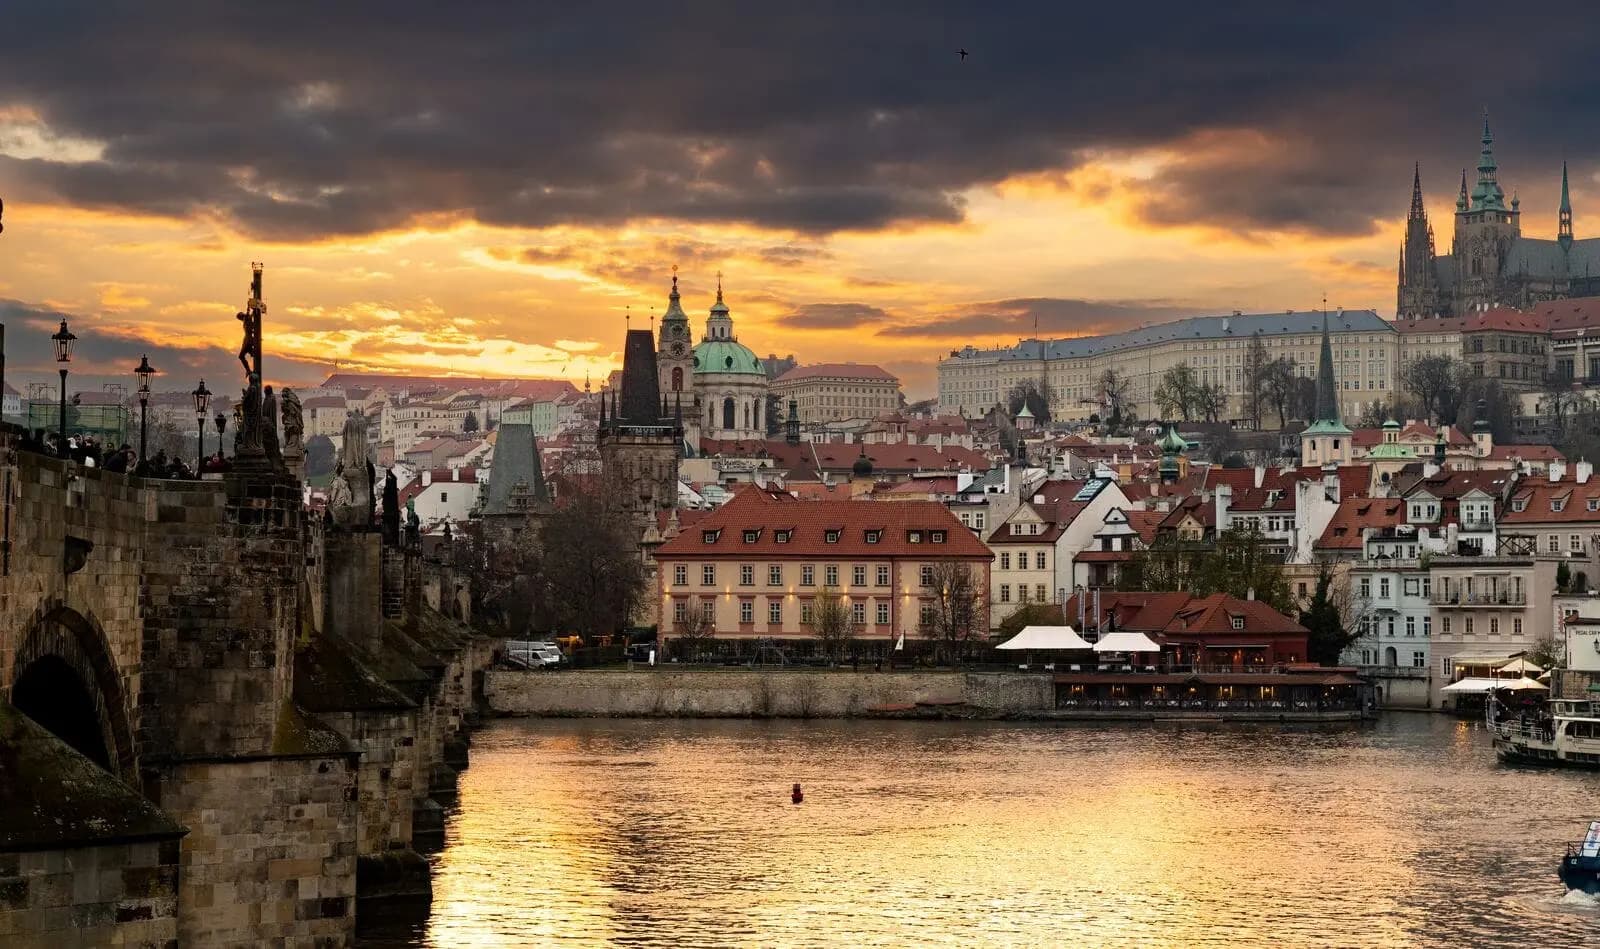 8 мая в Праге пройдут Дни открытых дверей в Сенате и Палате депутатов ЧР, а также в Грзанском дворце